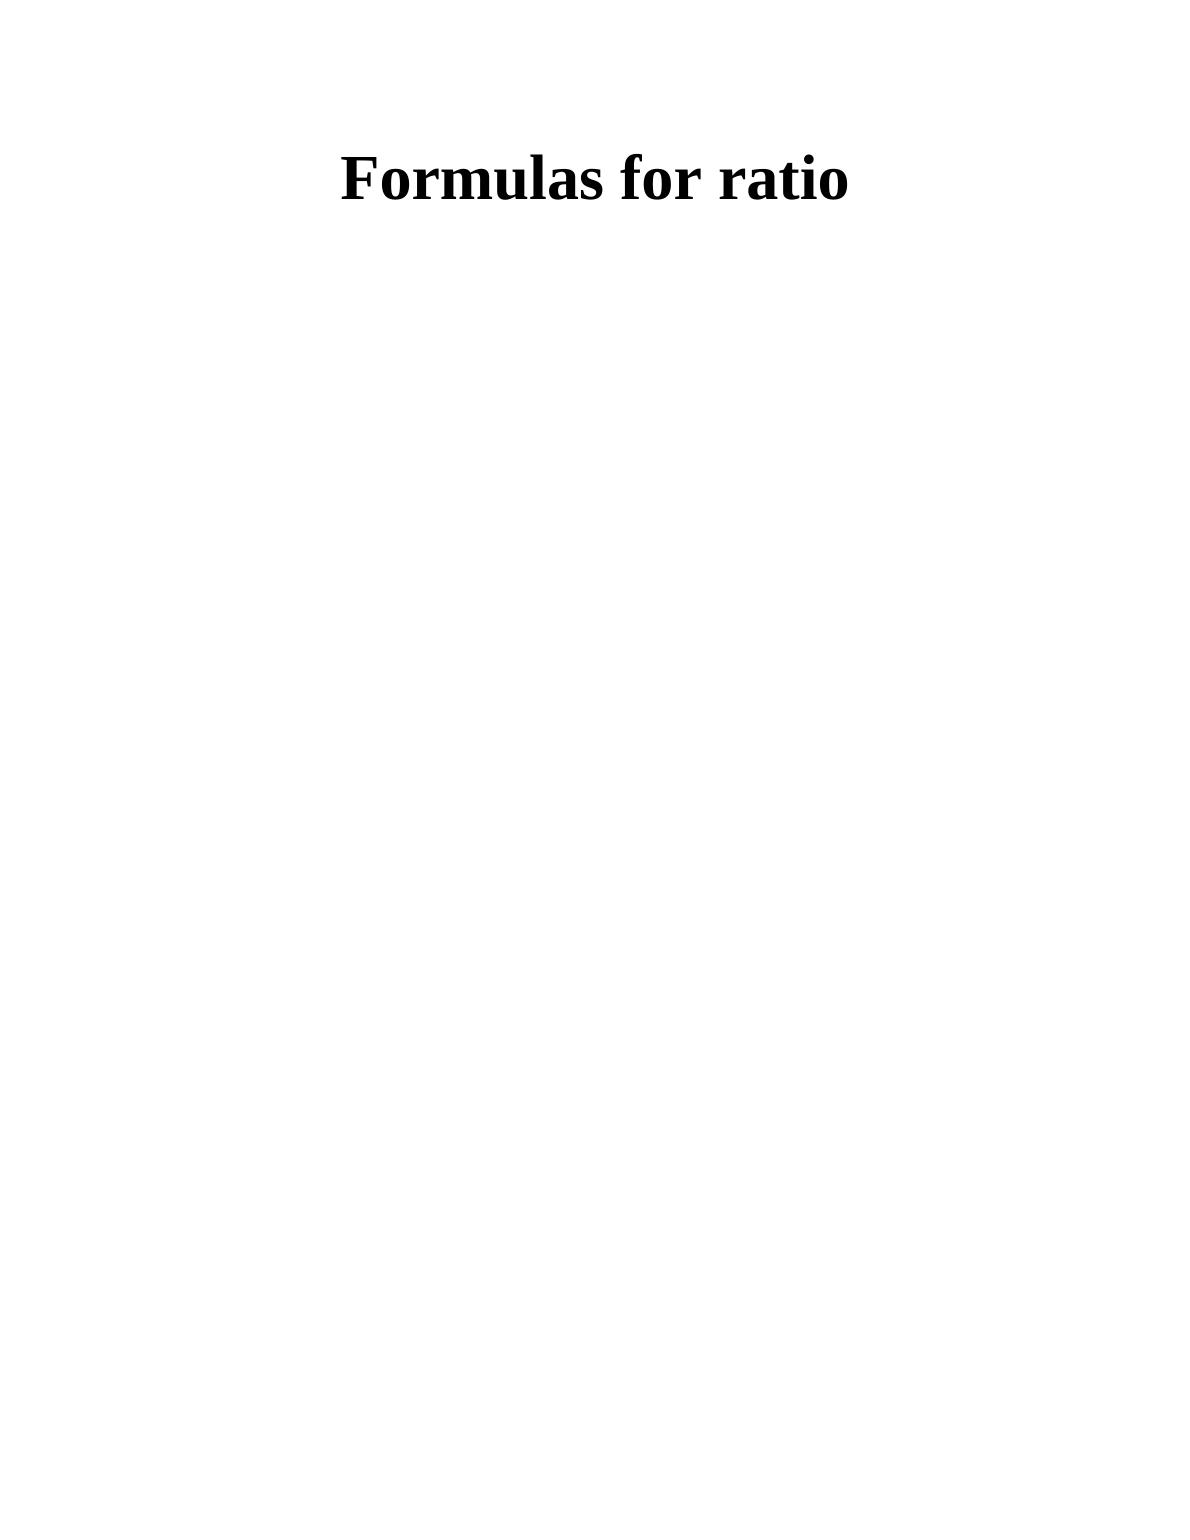 Formulas for Ratio - Assignment_1